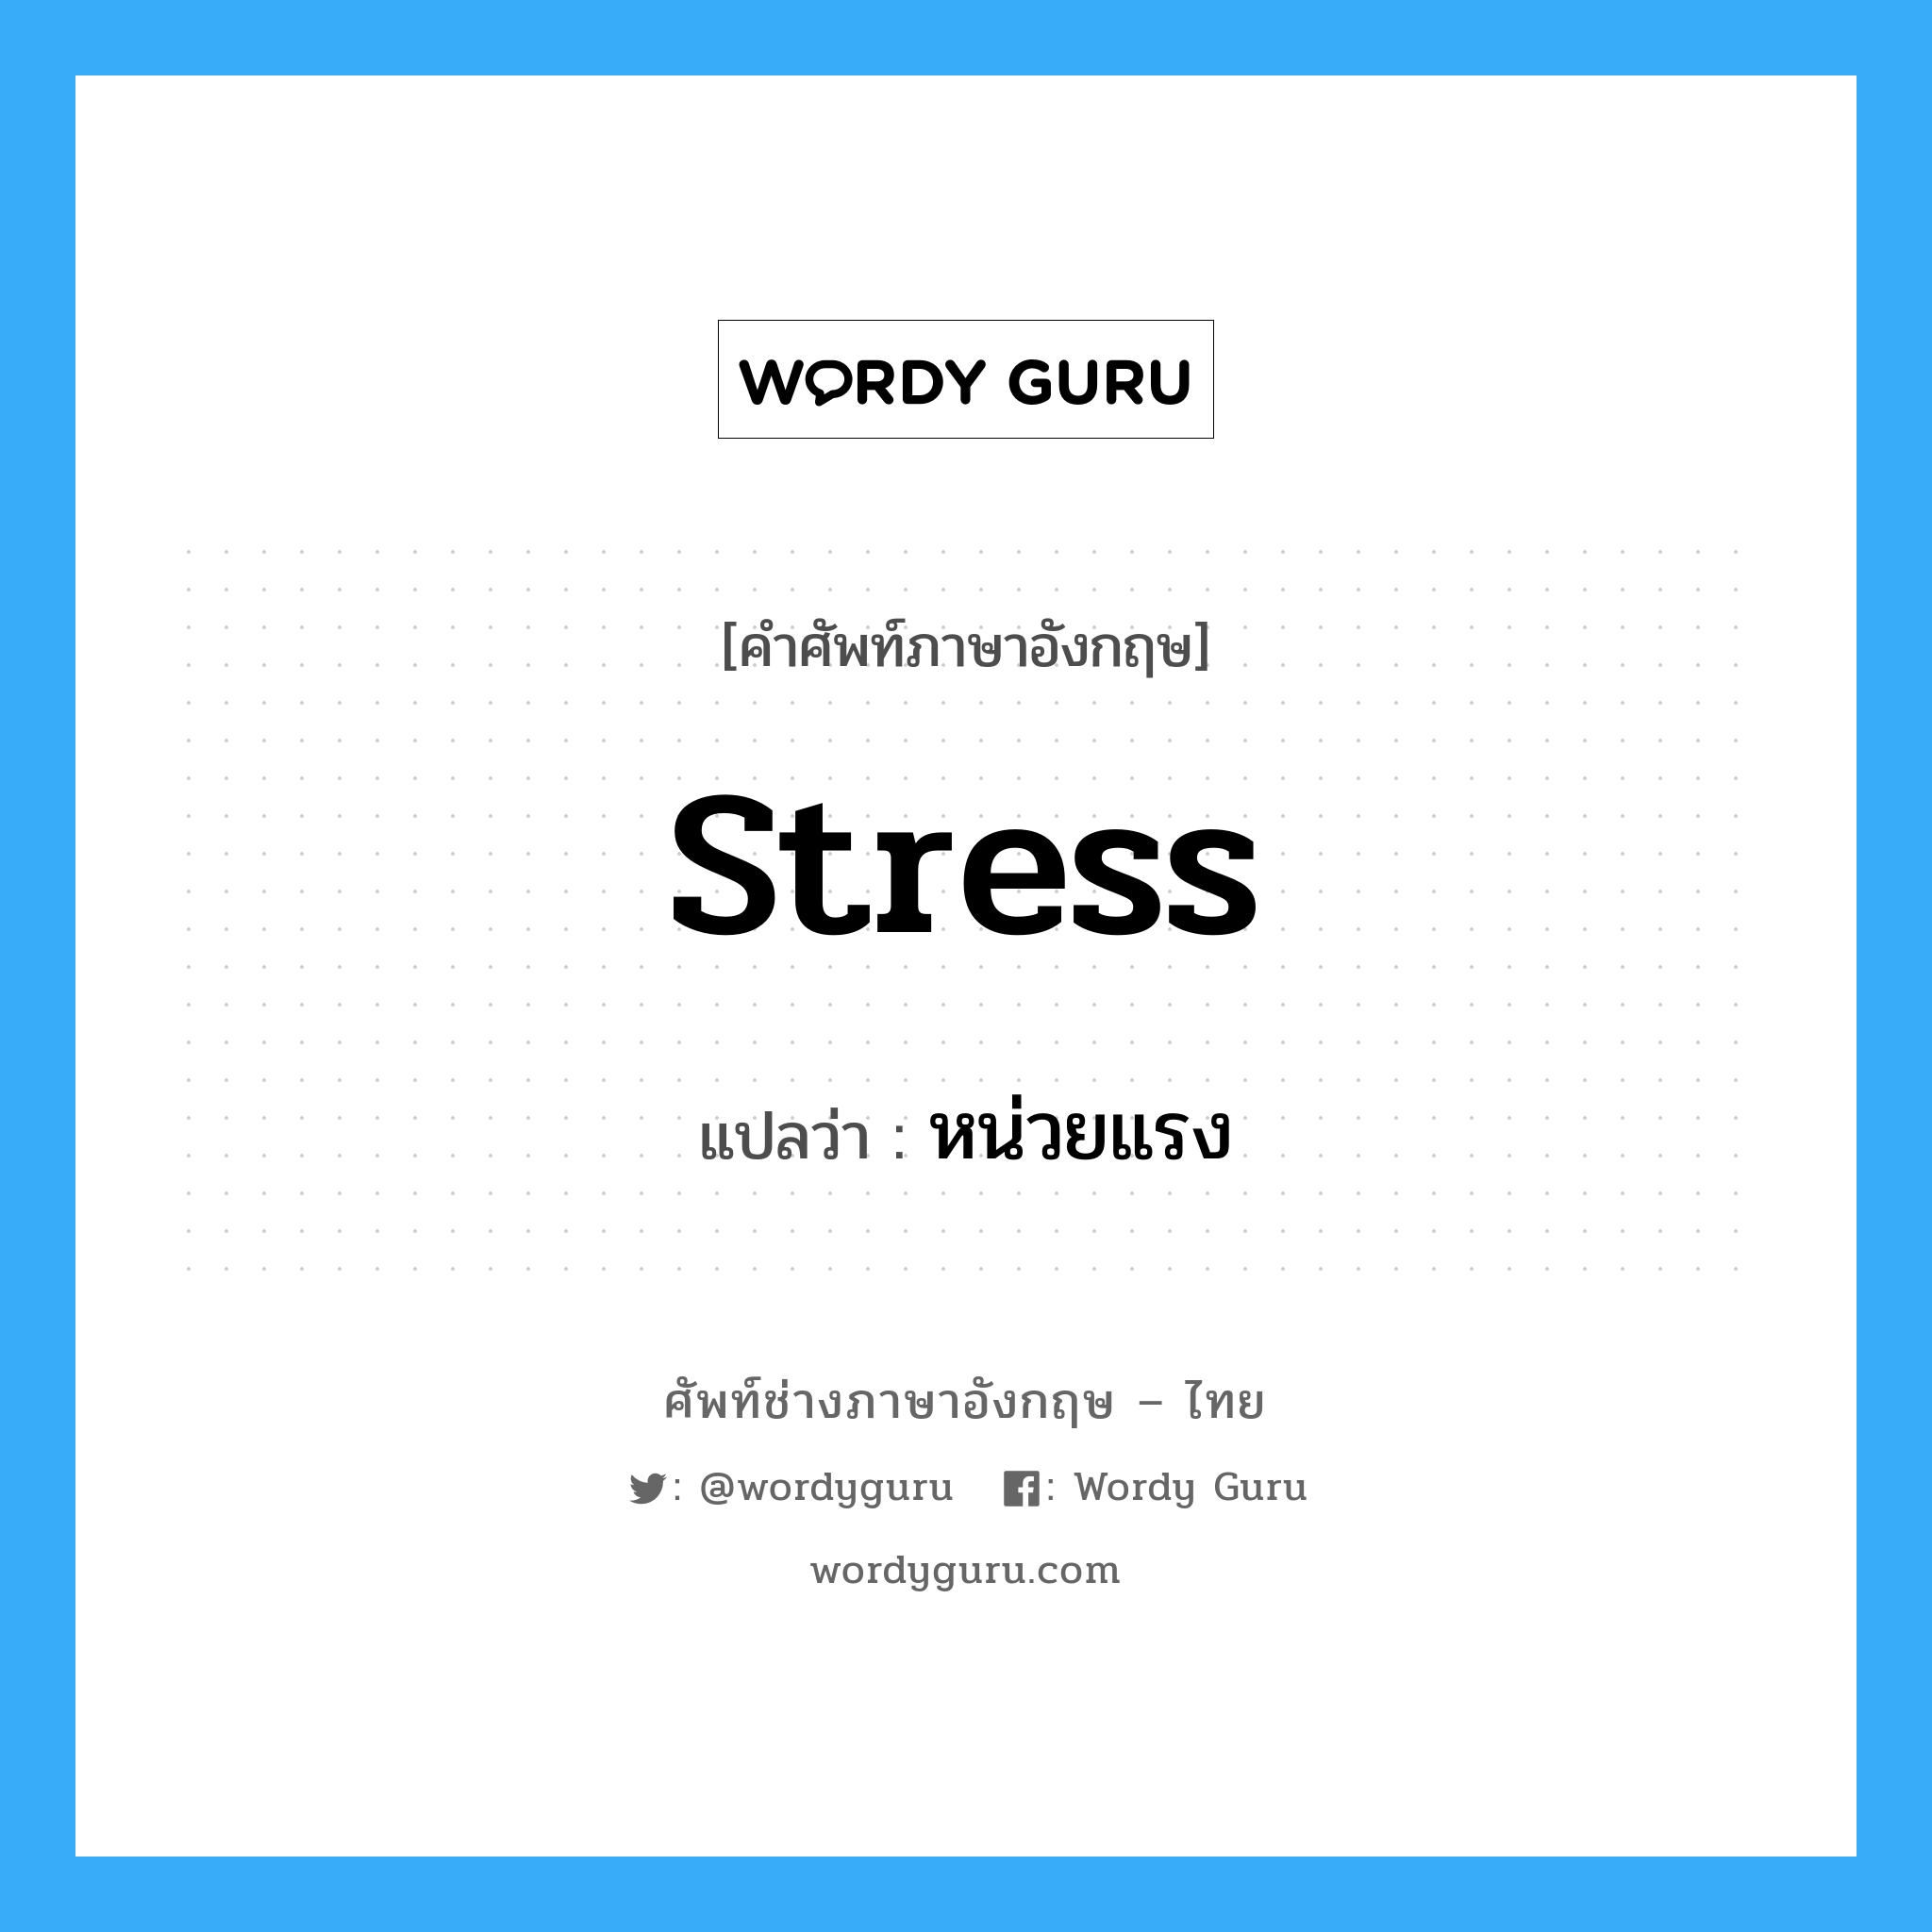 หน่วยแรง ภาษาอังกฤษ?, คำศัพท์ช่างภาษาอังกฤษ - ไทย หน่วยแรง คำศัพท์ภาษาอังกฤษ หน่วยแรง แปลว่า stress